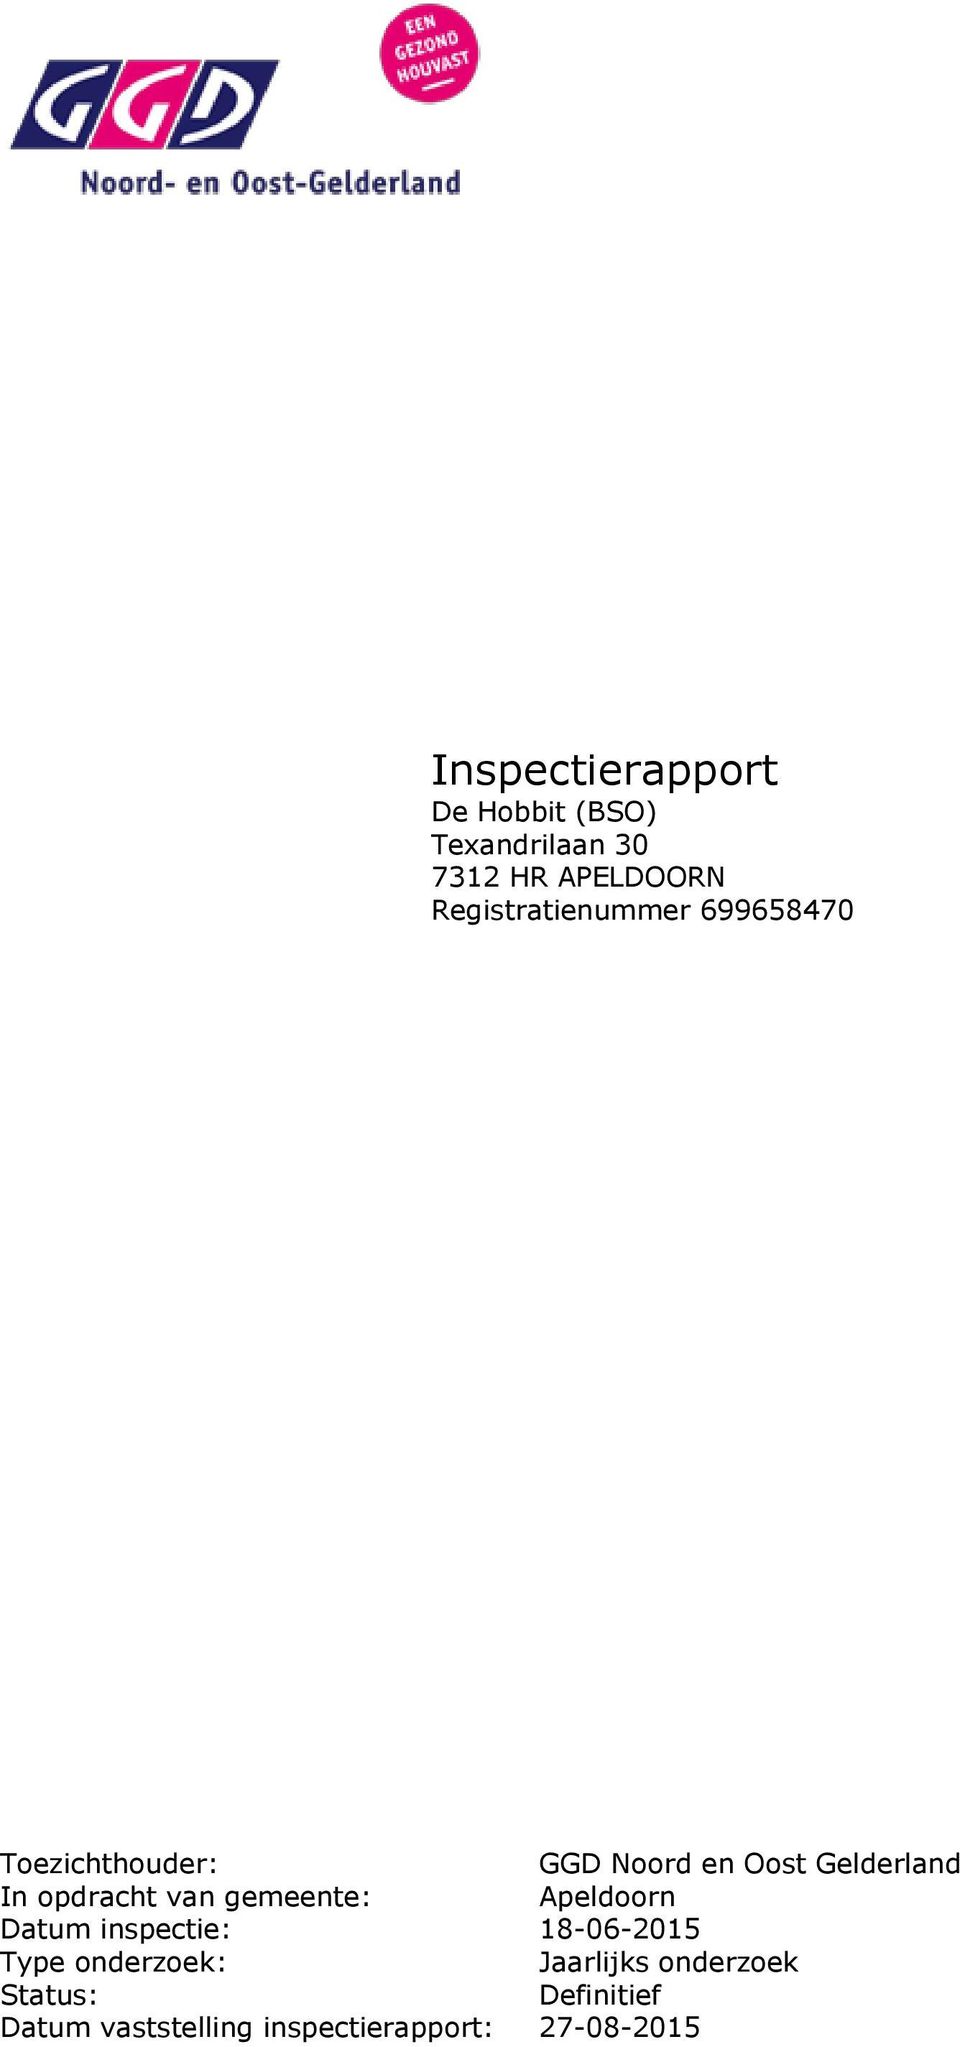 opdracht van gemeente: Apeldoorn Datum inspectie: 18-06-2015 Type onderzoek